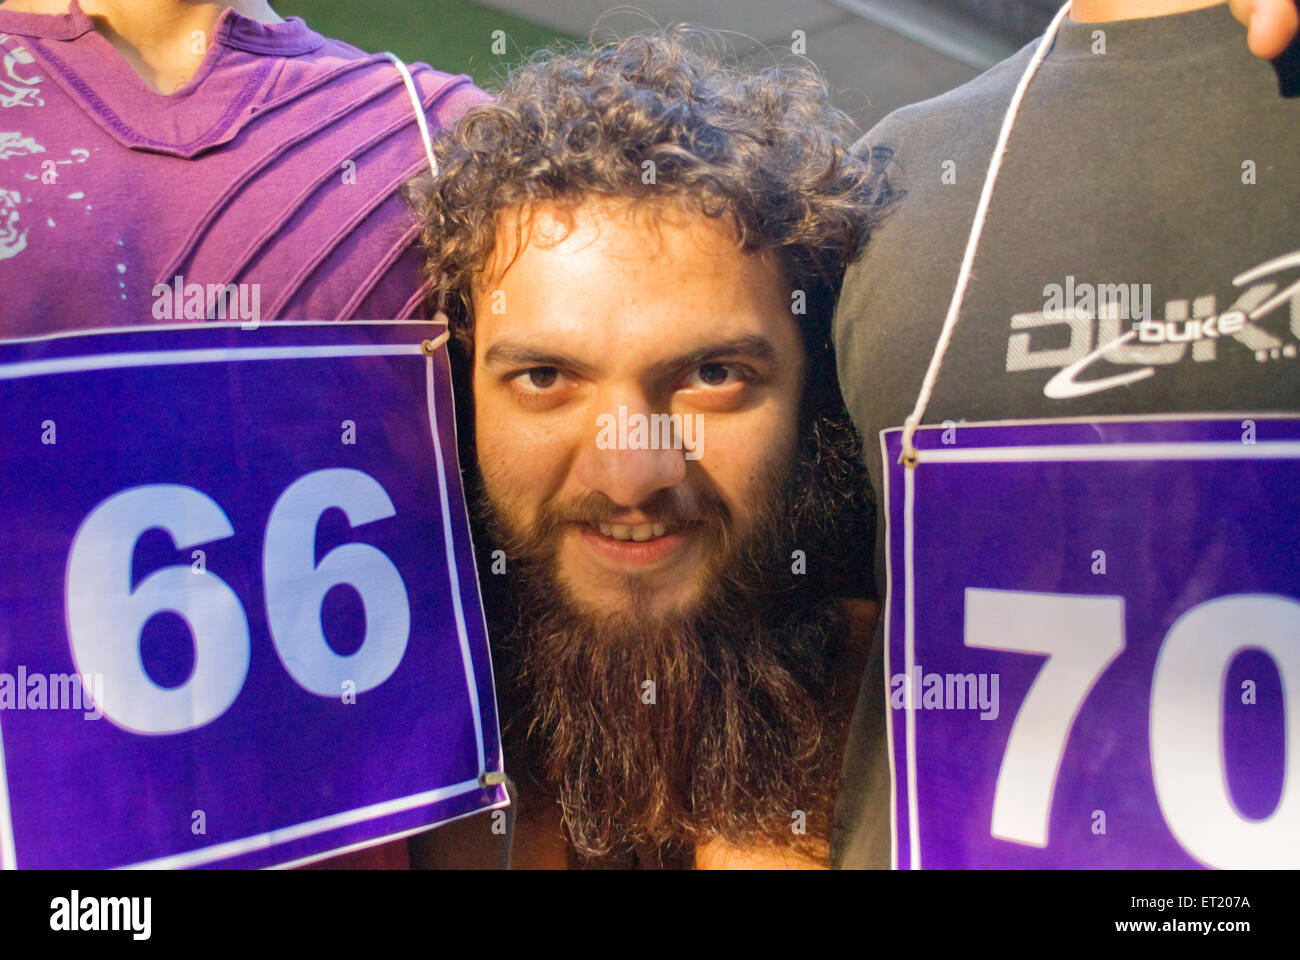 man with long beard, Bombay, Mumbai, Maharashtra, India, Asia Stock Photo